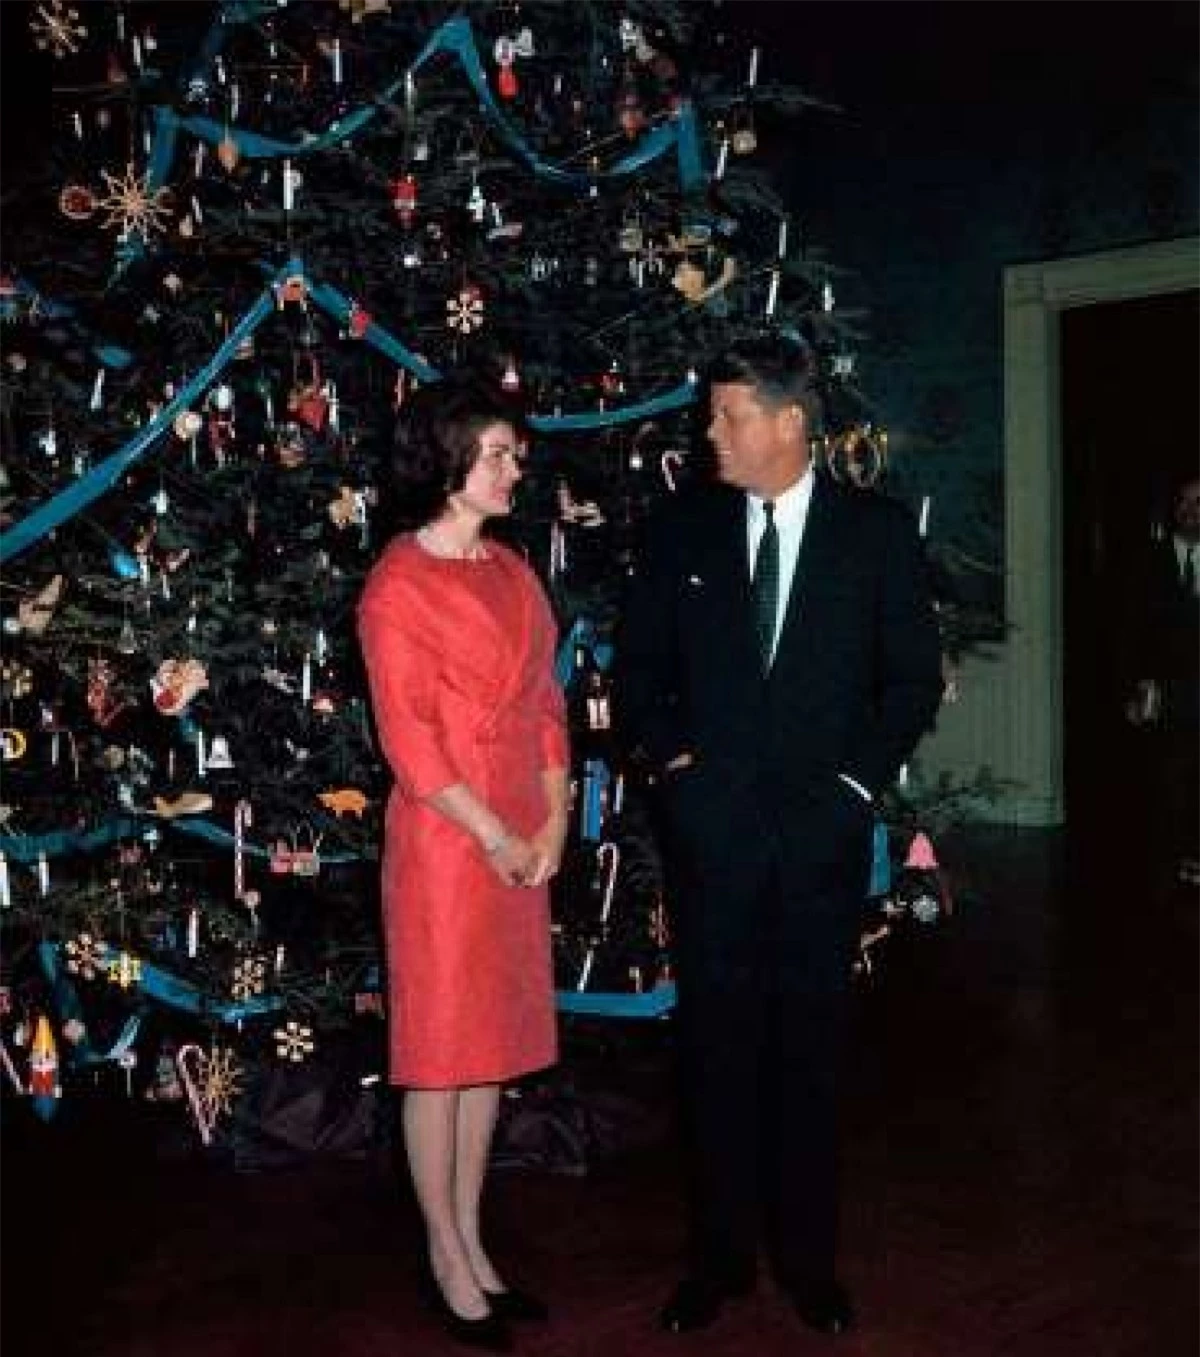 Lựa chọn chủ đề cho cây thông Noel: Đệ nhất phu nhân Jacqueline Kennedy bắt đầu truyền thống nghĩ ra chủ đề cho lễ Giáng sinh ở Nhà Trắng vào năm 1961. Vào năm đó, bà đã trang trí cây cho cây thông Noel với chủ đề "Kẹp Hạt dẻ". Gần đây, năm 2019, Đệ nhất phu nhân Melania Trump nghĩ ra chủ đề "Tinh thần nước Mỹ" và năm 2020 là chủ đề "Nước Mỹ xinh đẹp" cho dịp Giáng sinh.